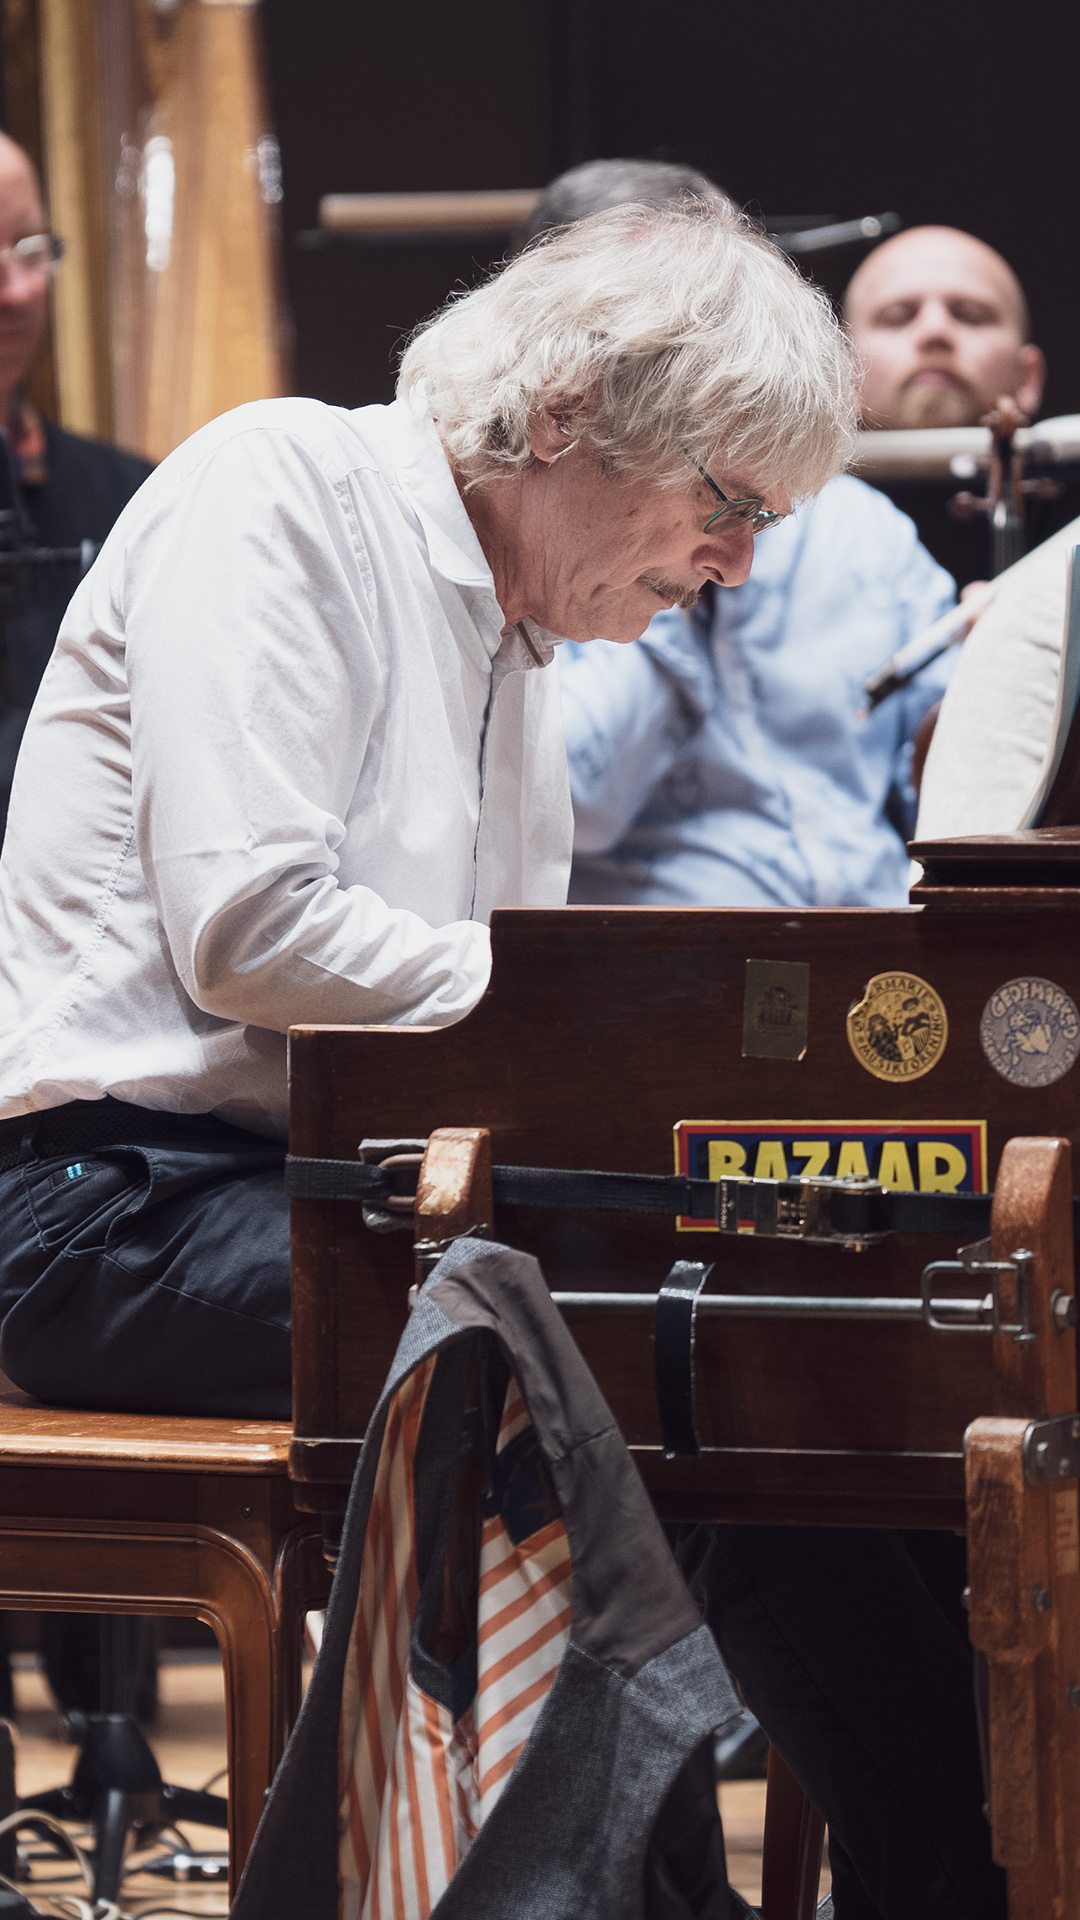 Musik med stribede strømper: Oplev Anders Koppel spille sin svingende nye koncert for Hammondorgel og symfoniorkester